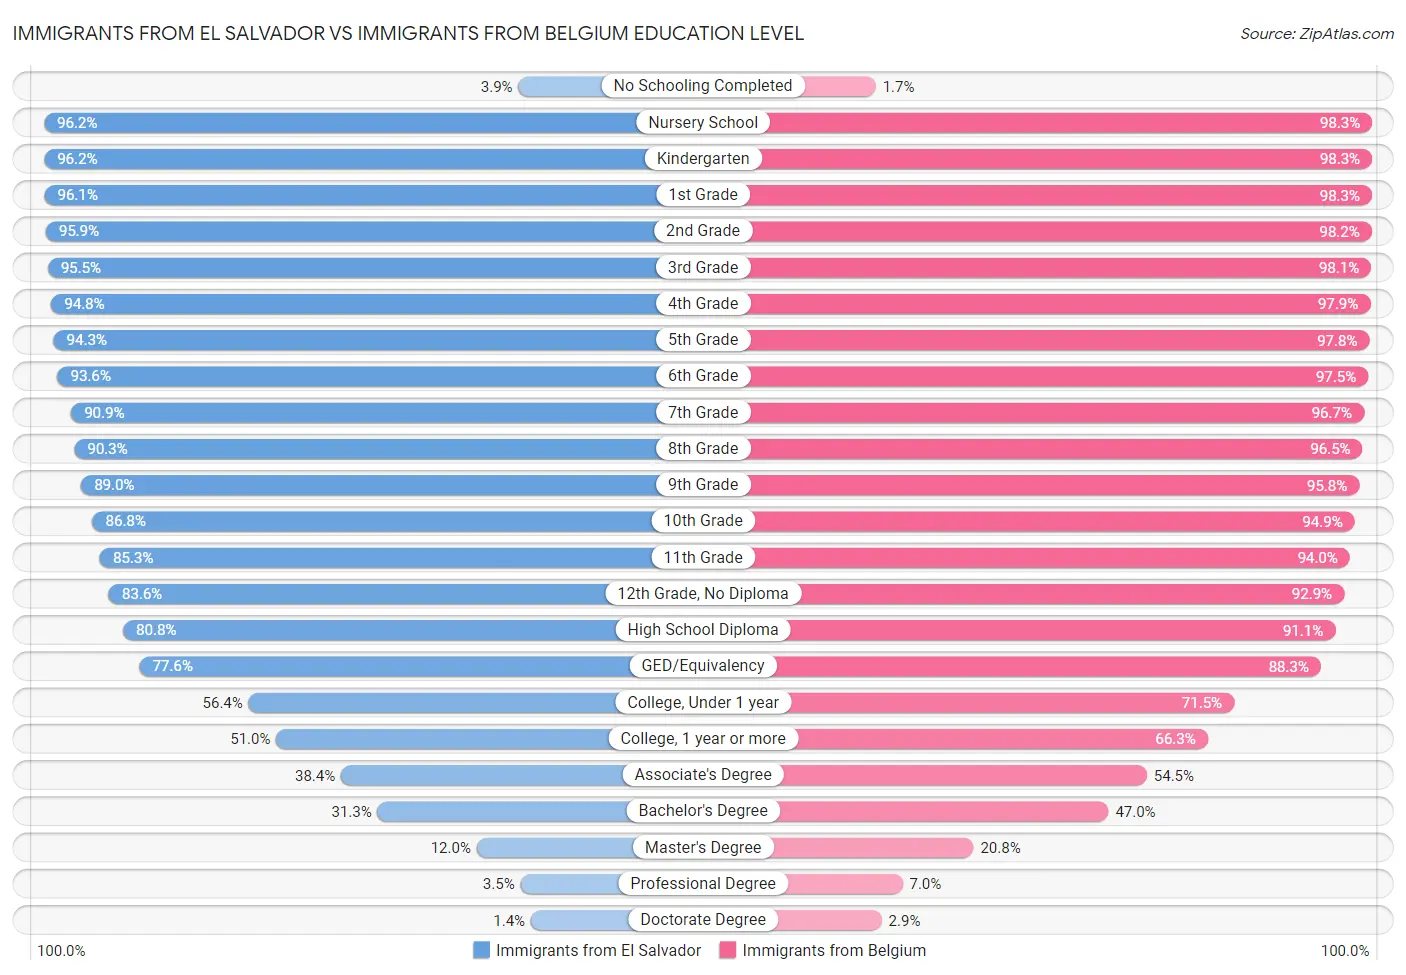 Immigrants from El Salvador vs Immigrants from Belgium Education Level